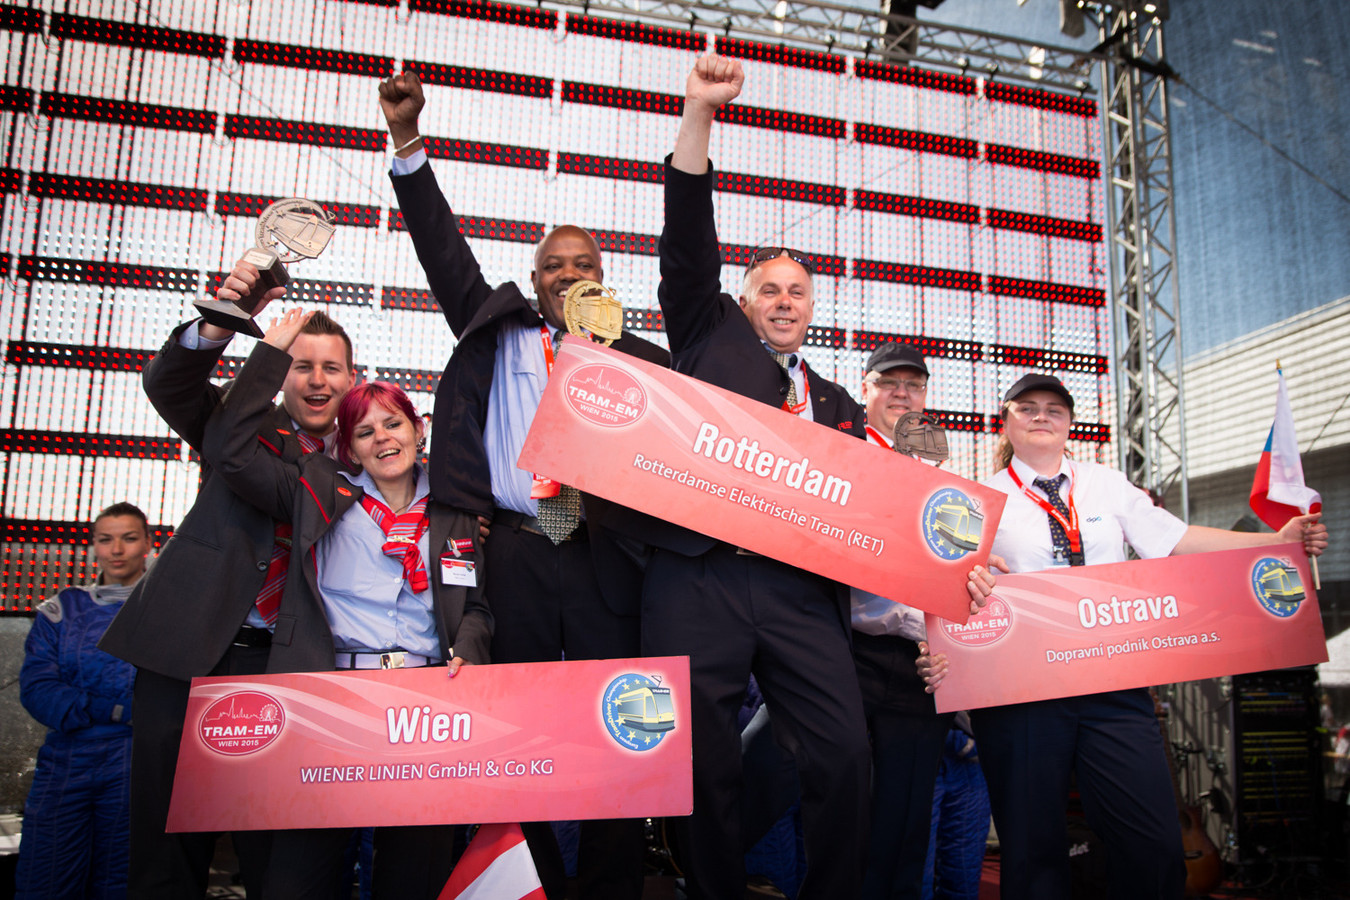 Les lauréats néerlandais, autrichiens et tchèques posant avec leurs trophées